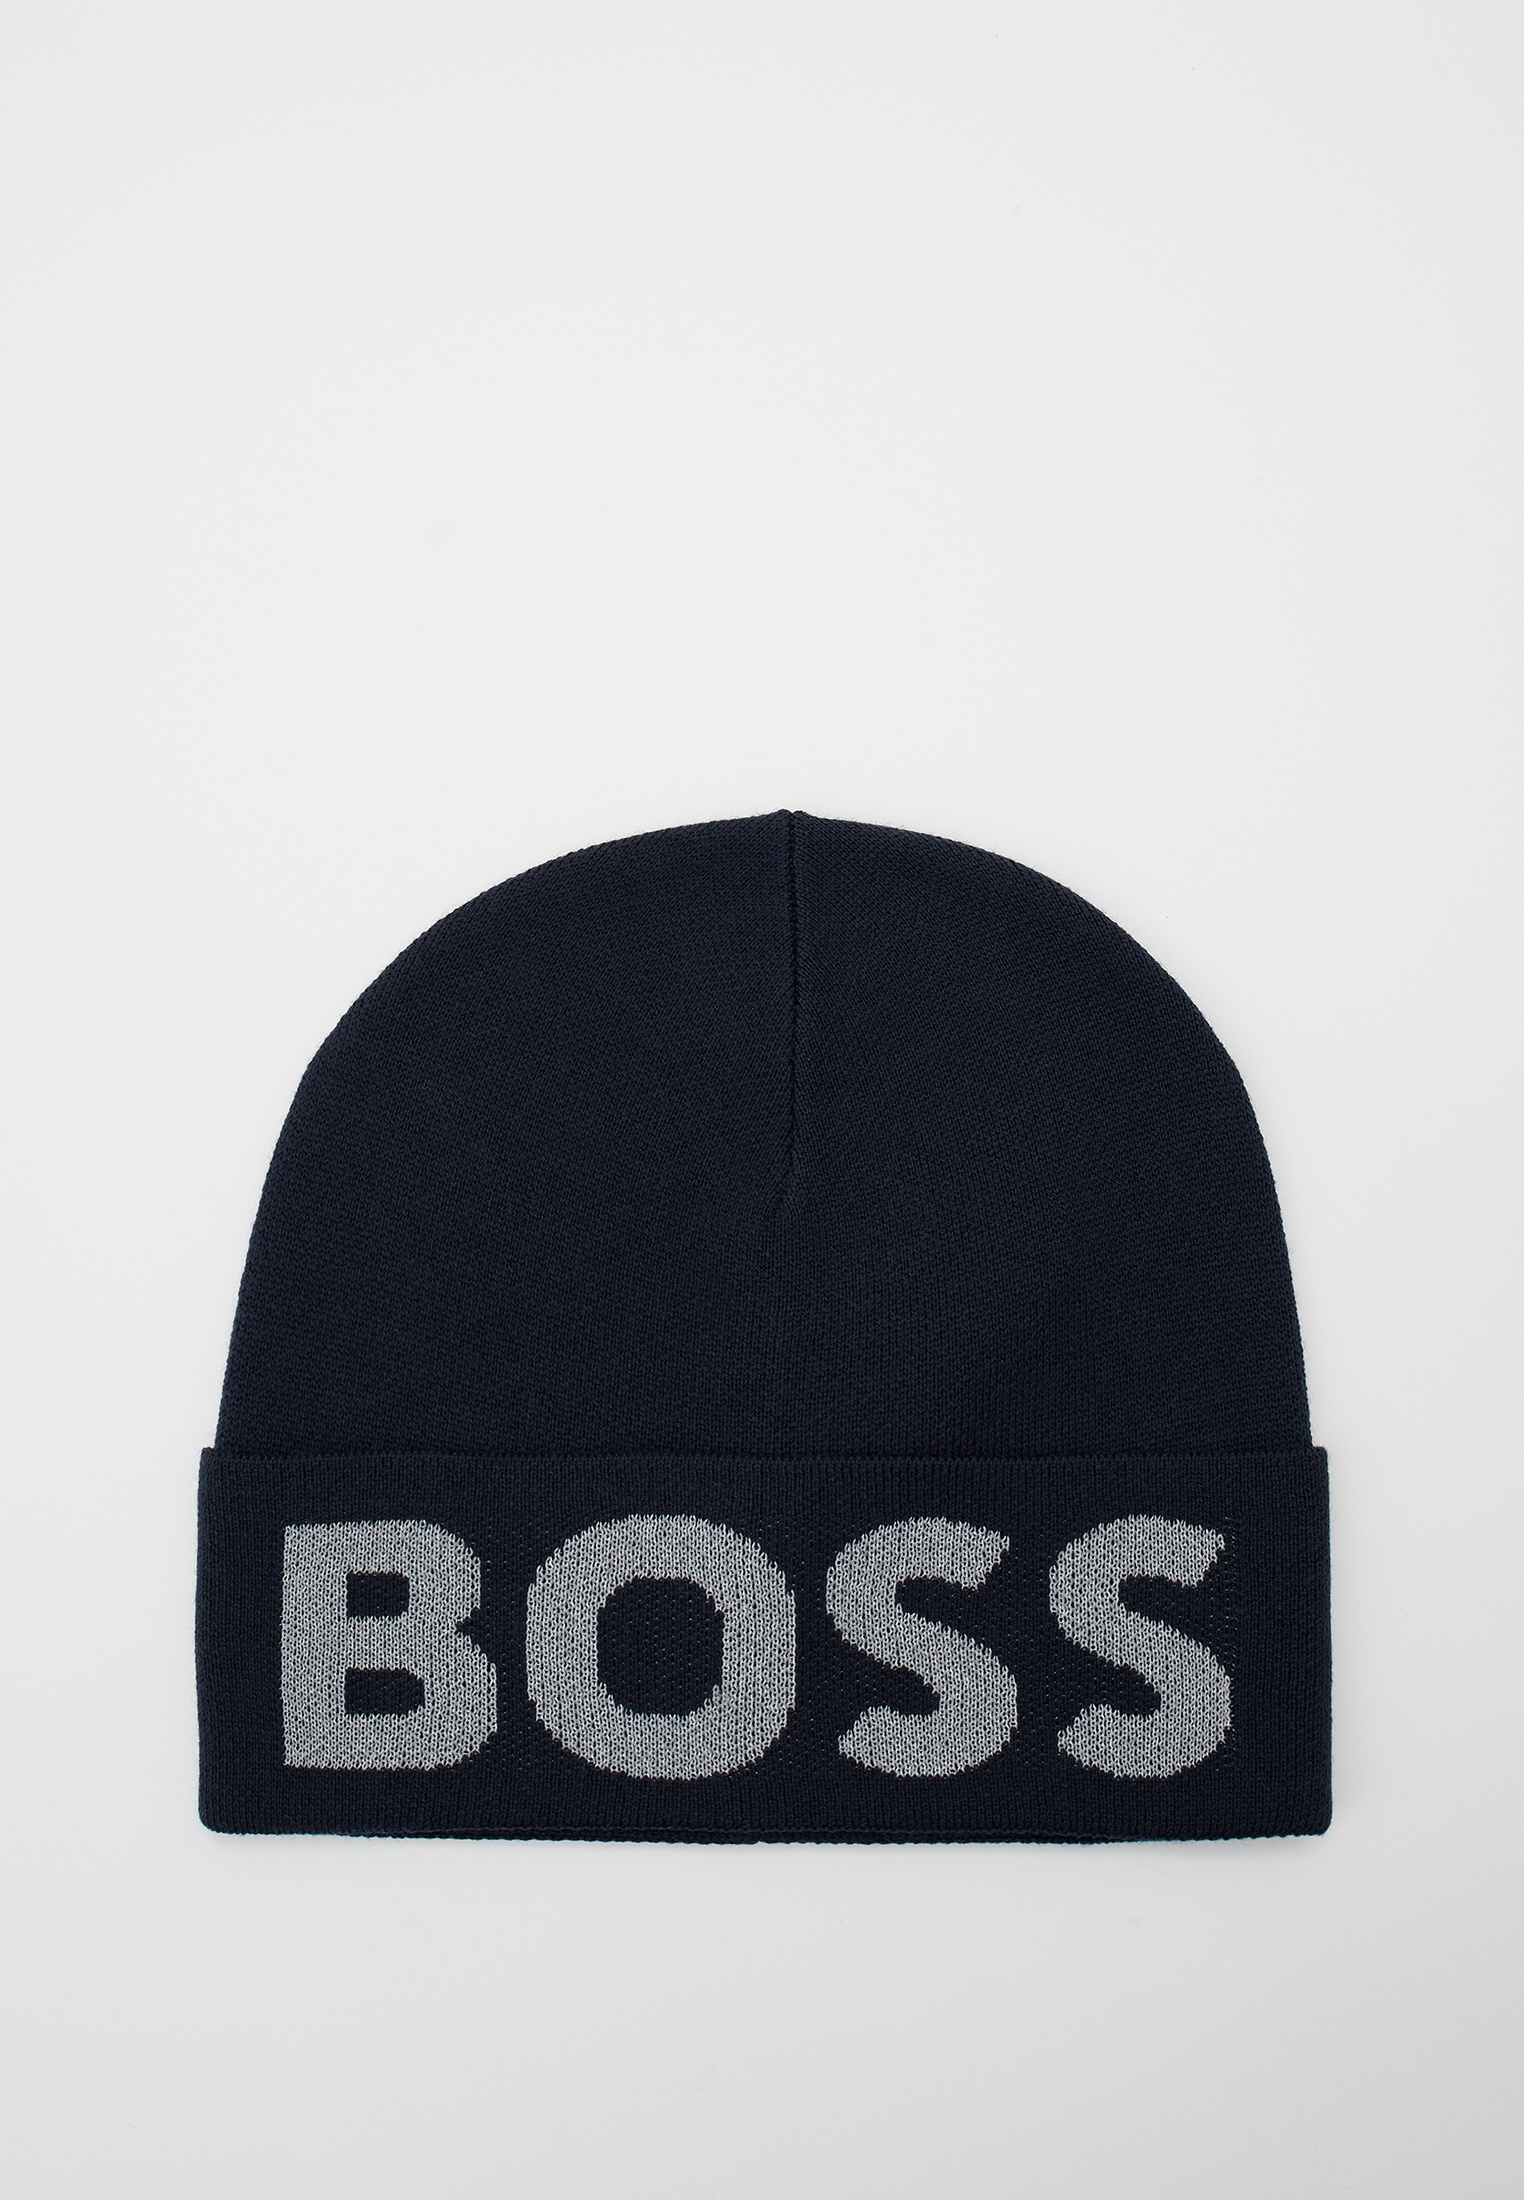 Шапка Boss (Босс) 50500587